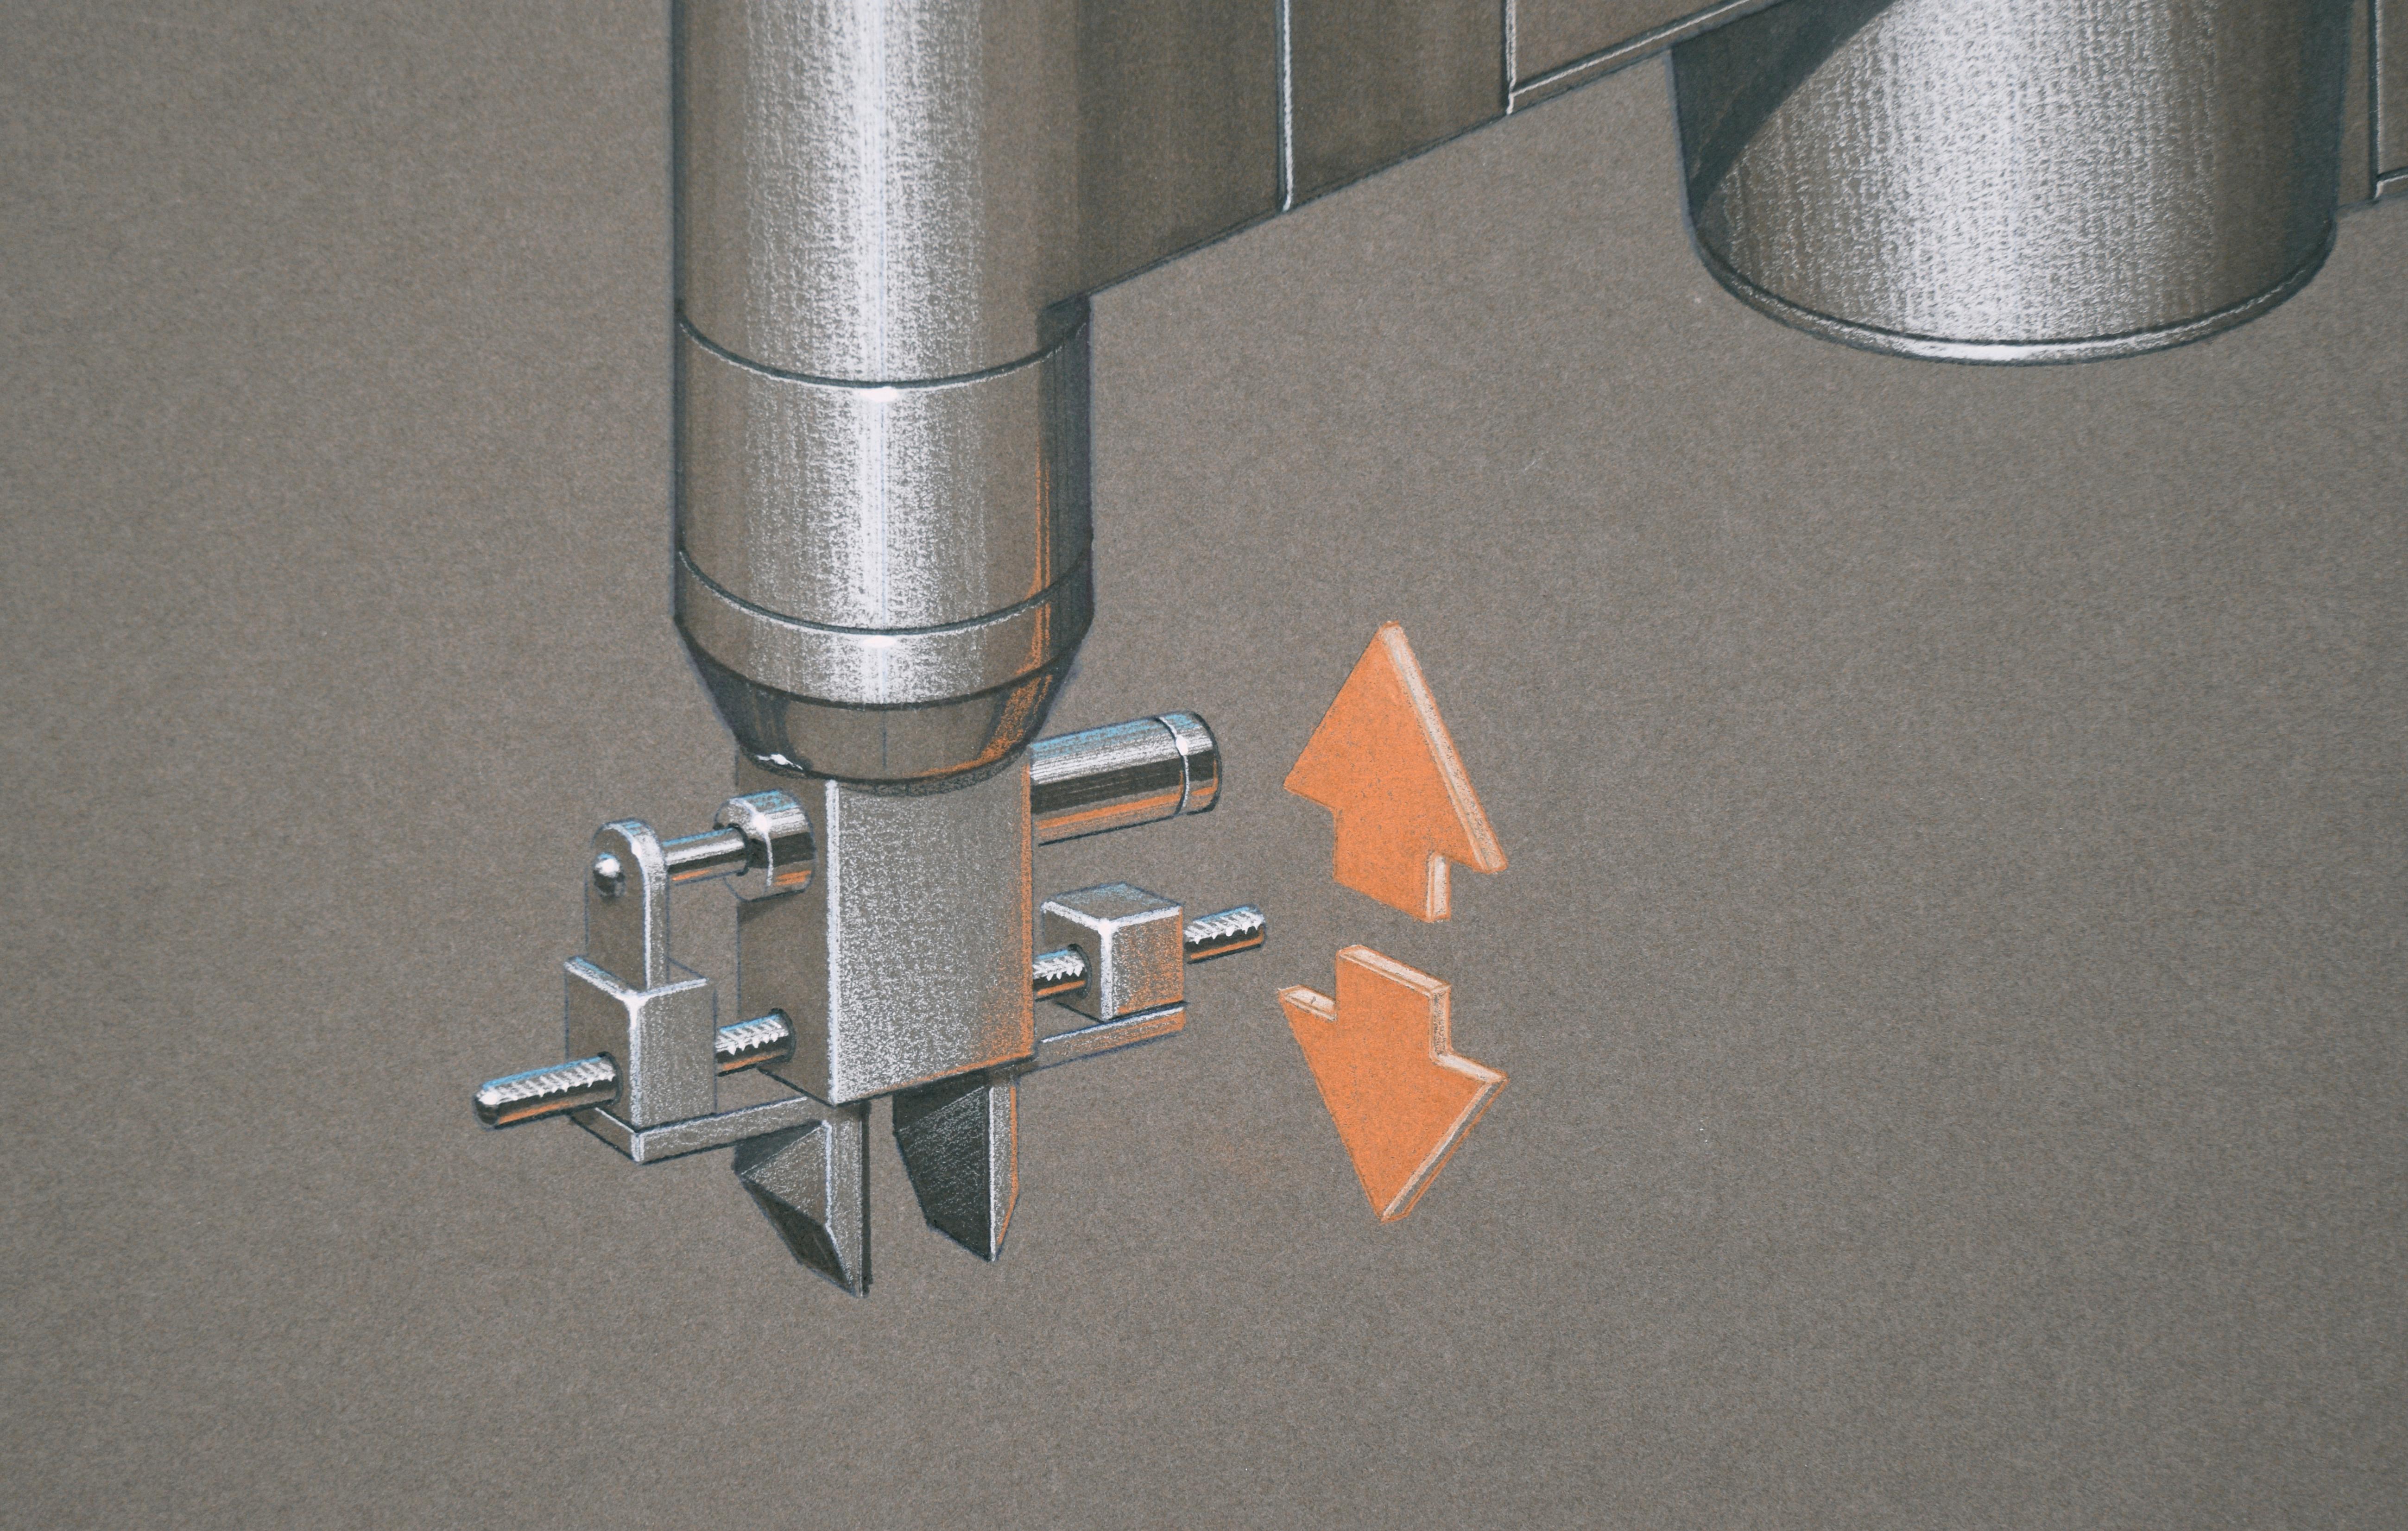 Illustrations de qualité du design des machines Intelledex par Edward T. AT&T (américain, 1943-2010). La machine est rendue de manière experte, avec des ombres douces et des détails spécifiques. Les reflets sur le métal sont ajoutés à la gouache,